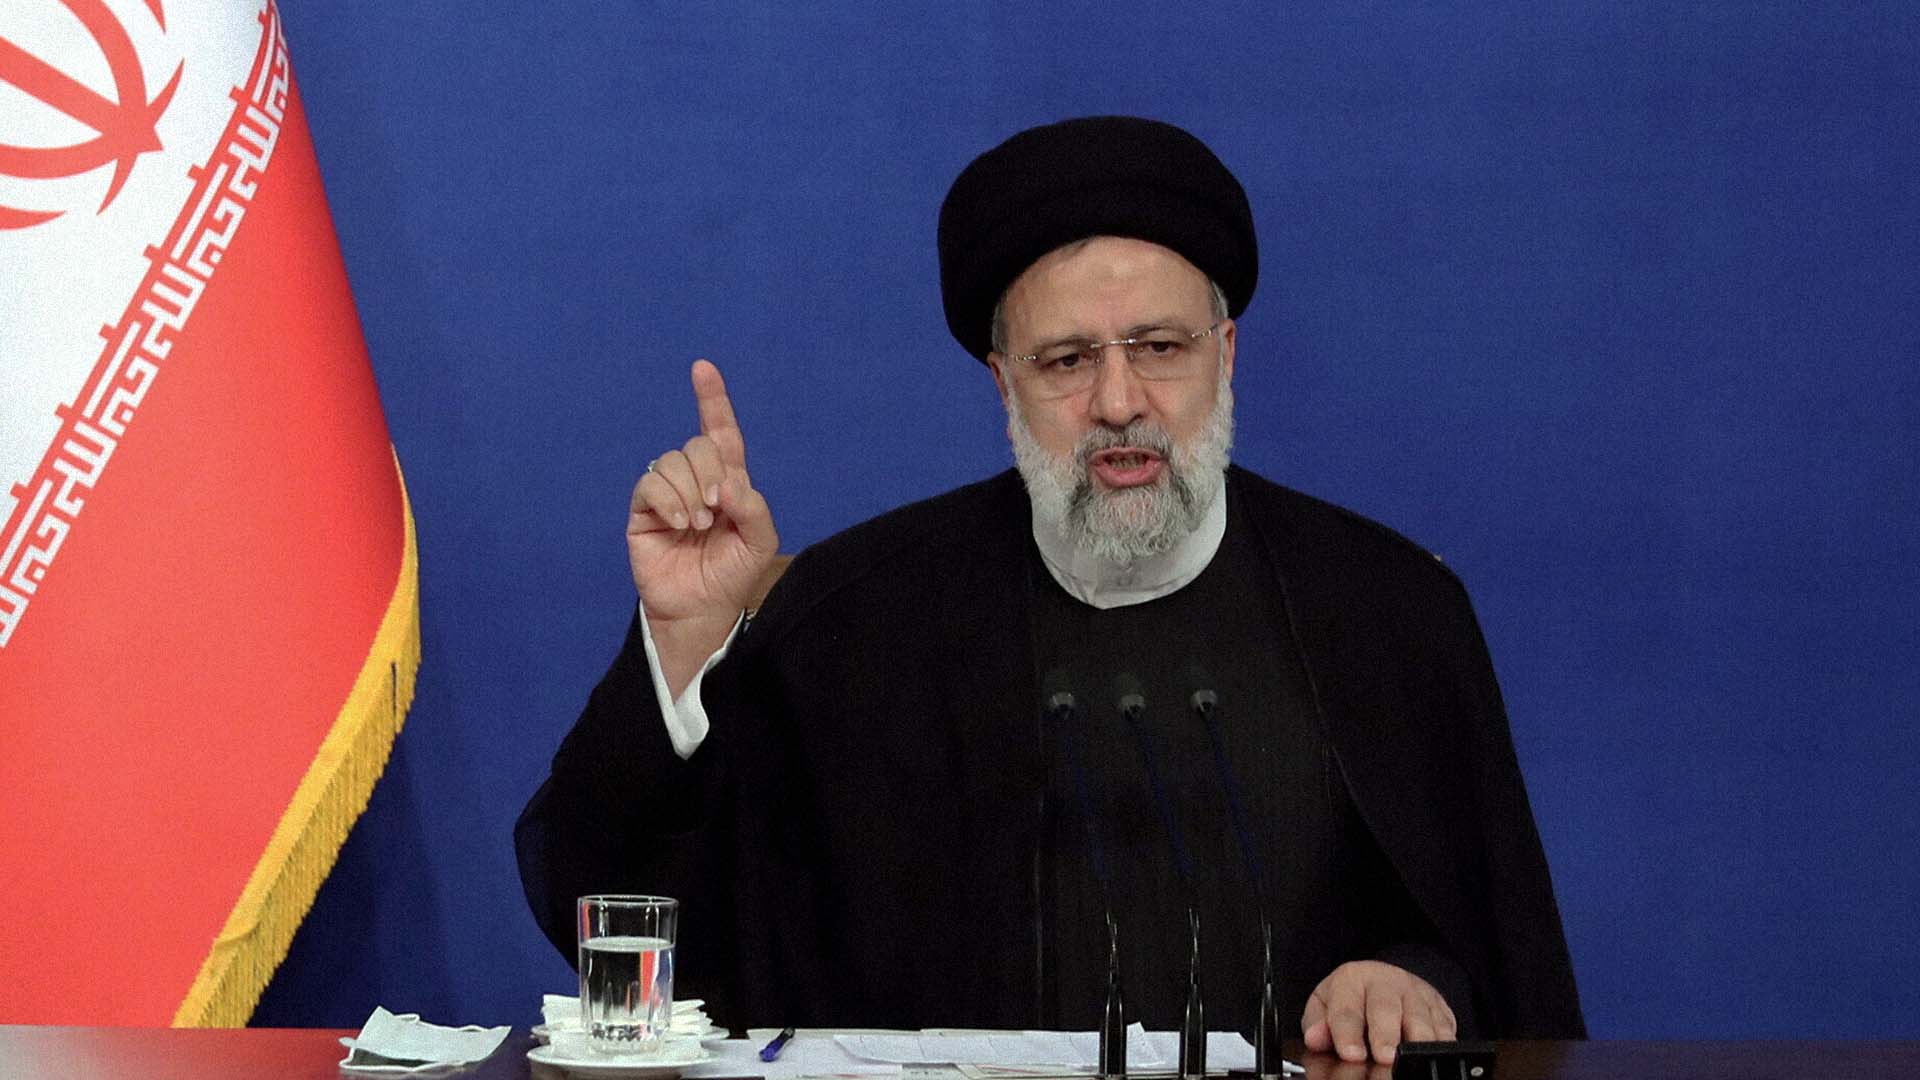 صورة الرئيس الإيراني يأمر بتنفيذ حزمة إصلاحات تبدأ بإعدام المتظاهرين عوض قتلهم في الشارع